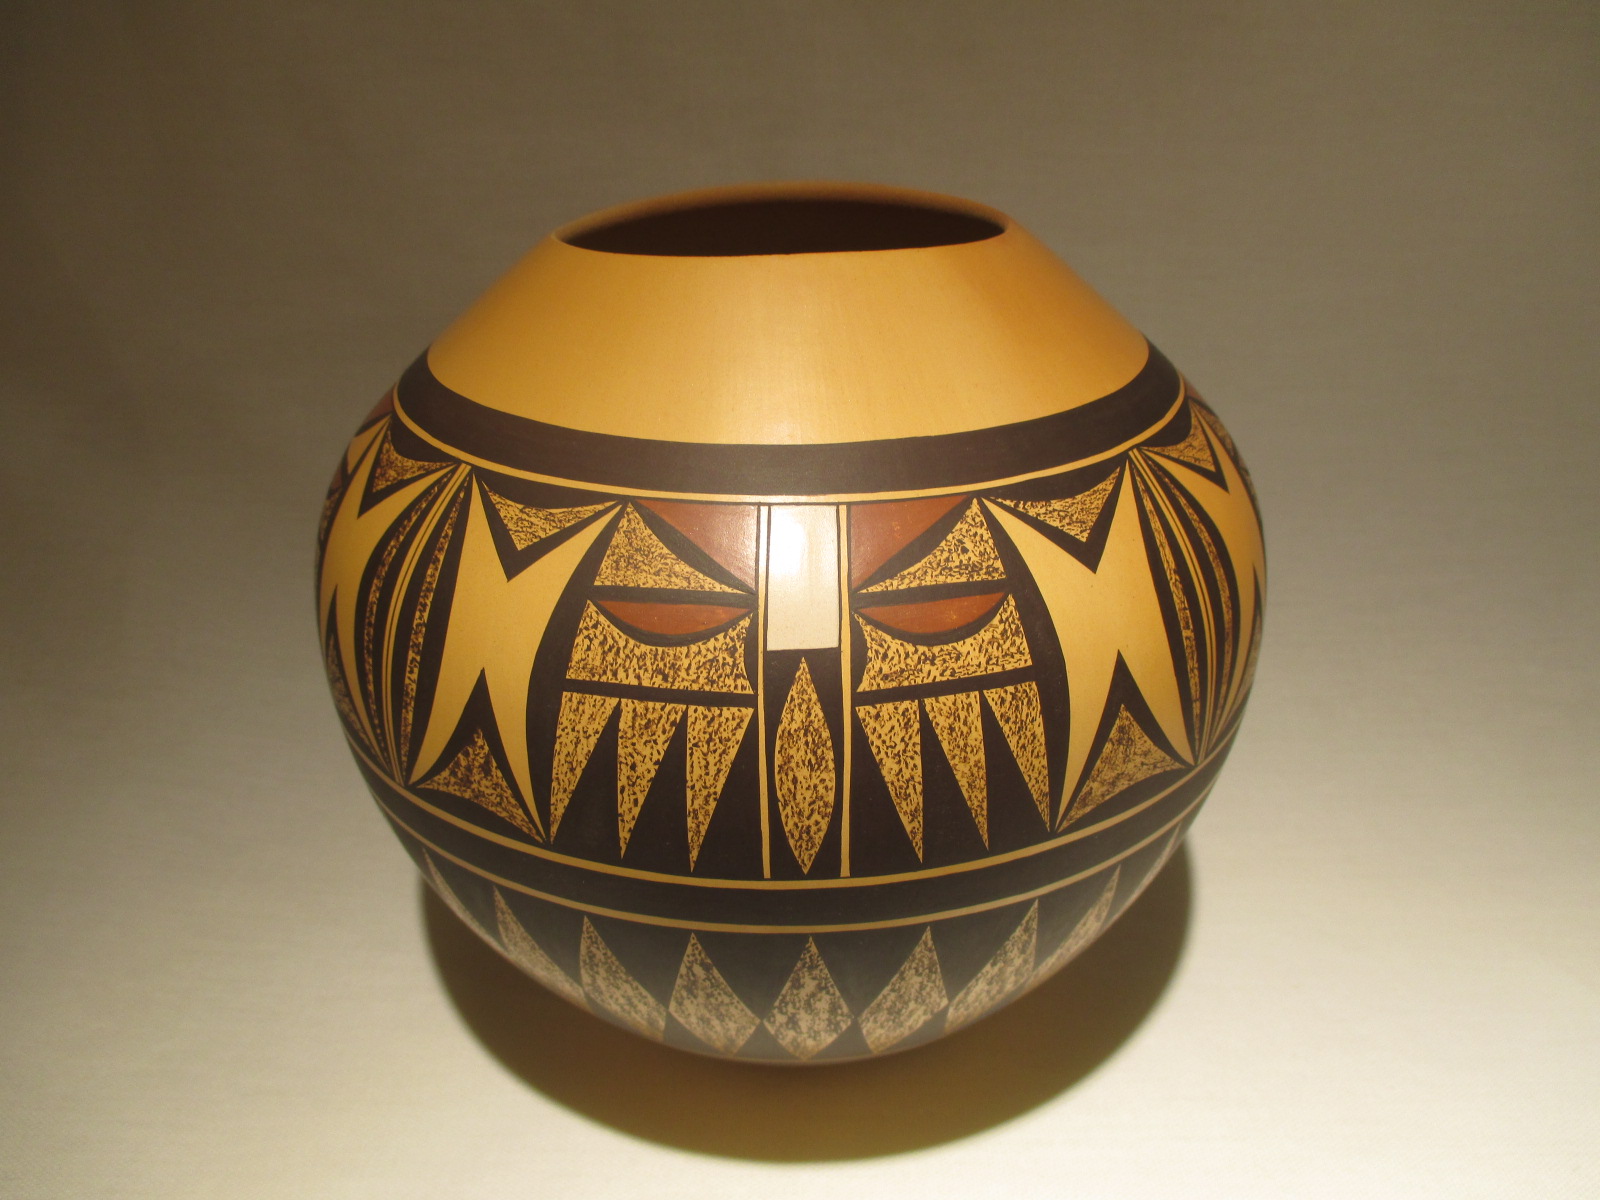 Hopi Pottery / Jar by Steve Lucas - Hopi Indian Pottery Jar